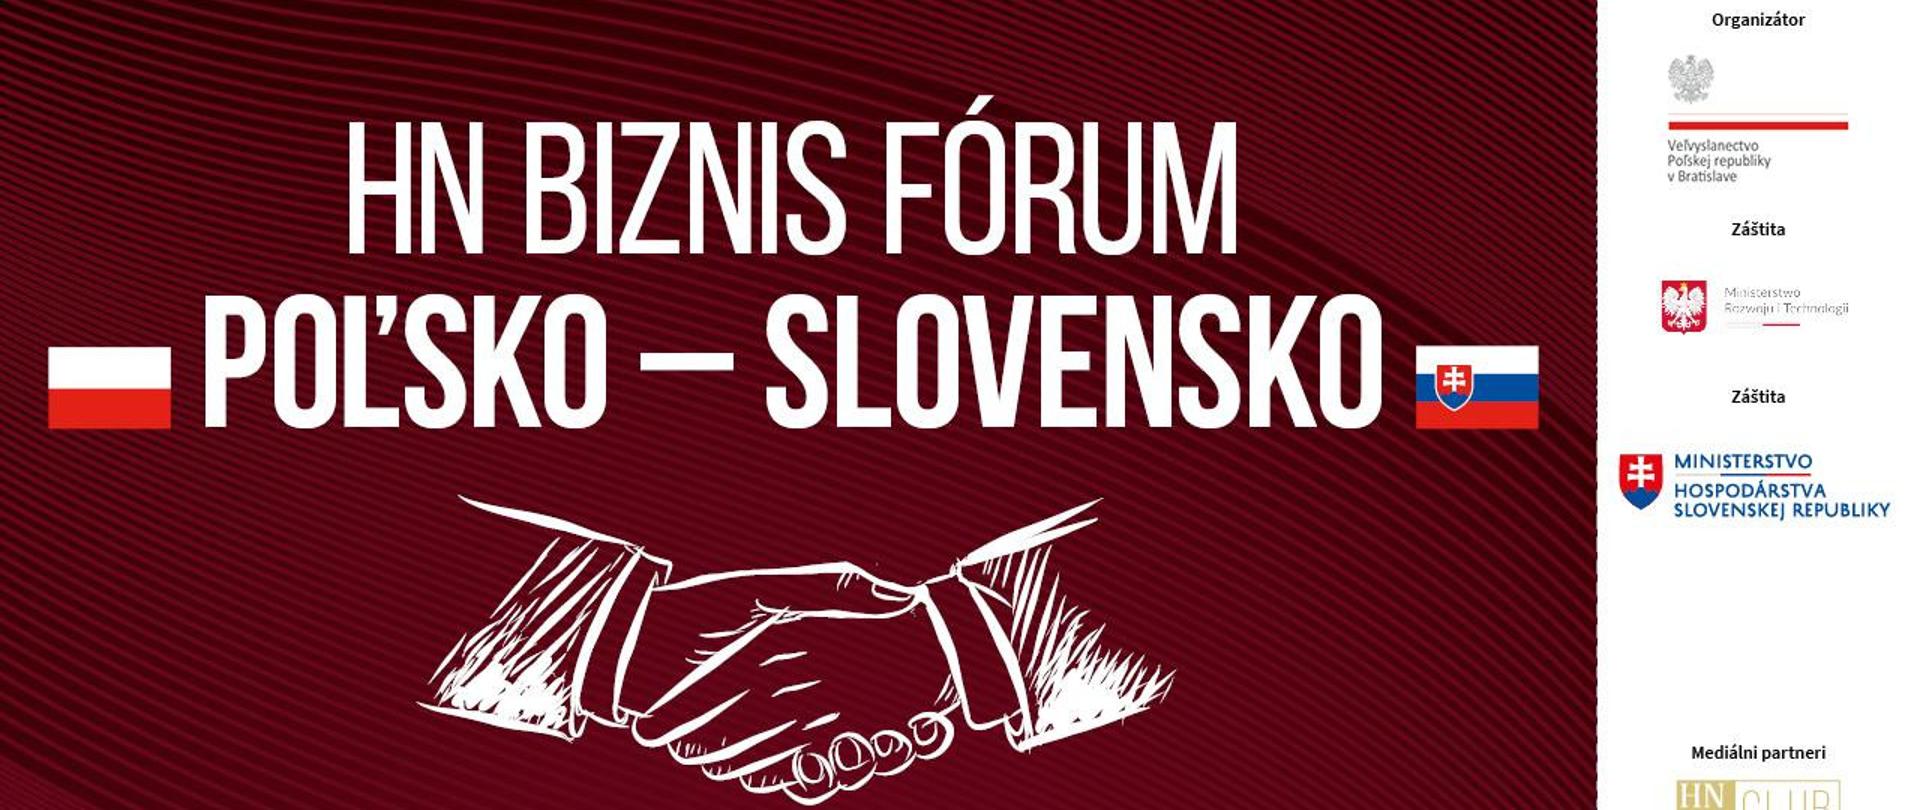 HN Forum Biznesu Polska – Słowacja